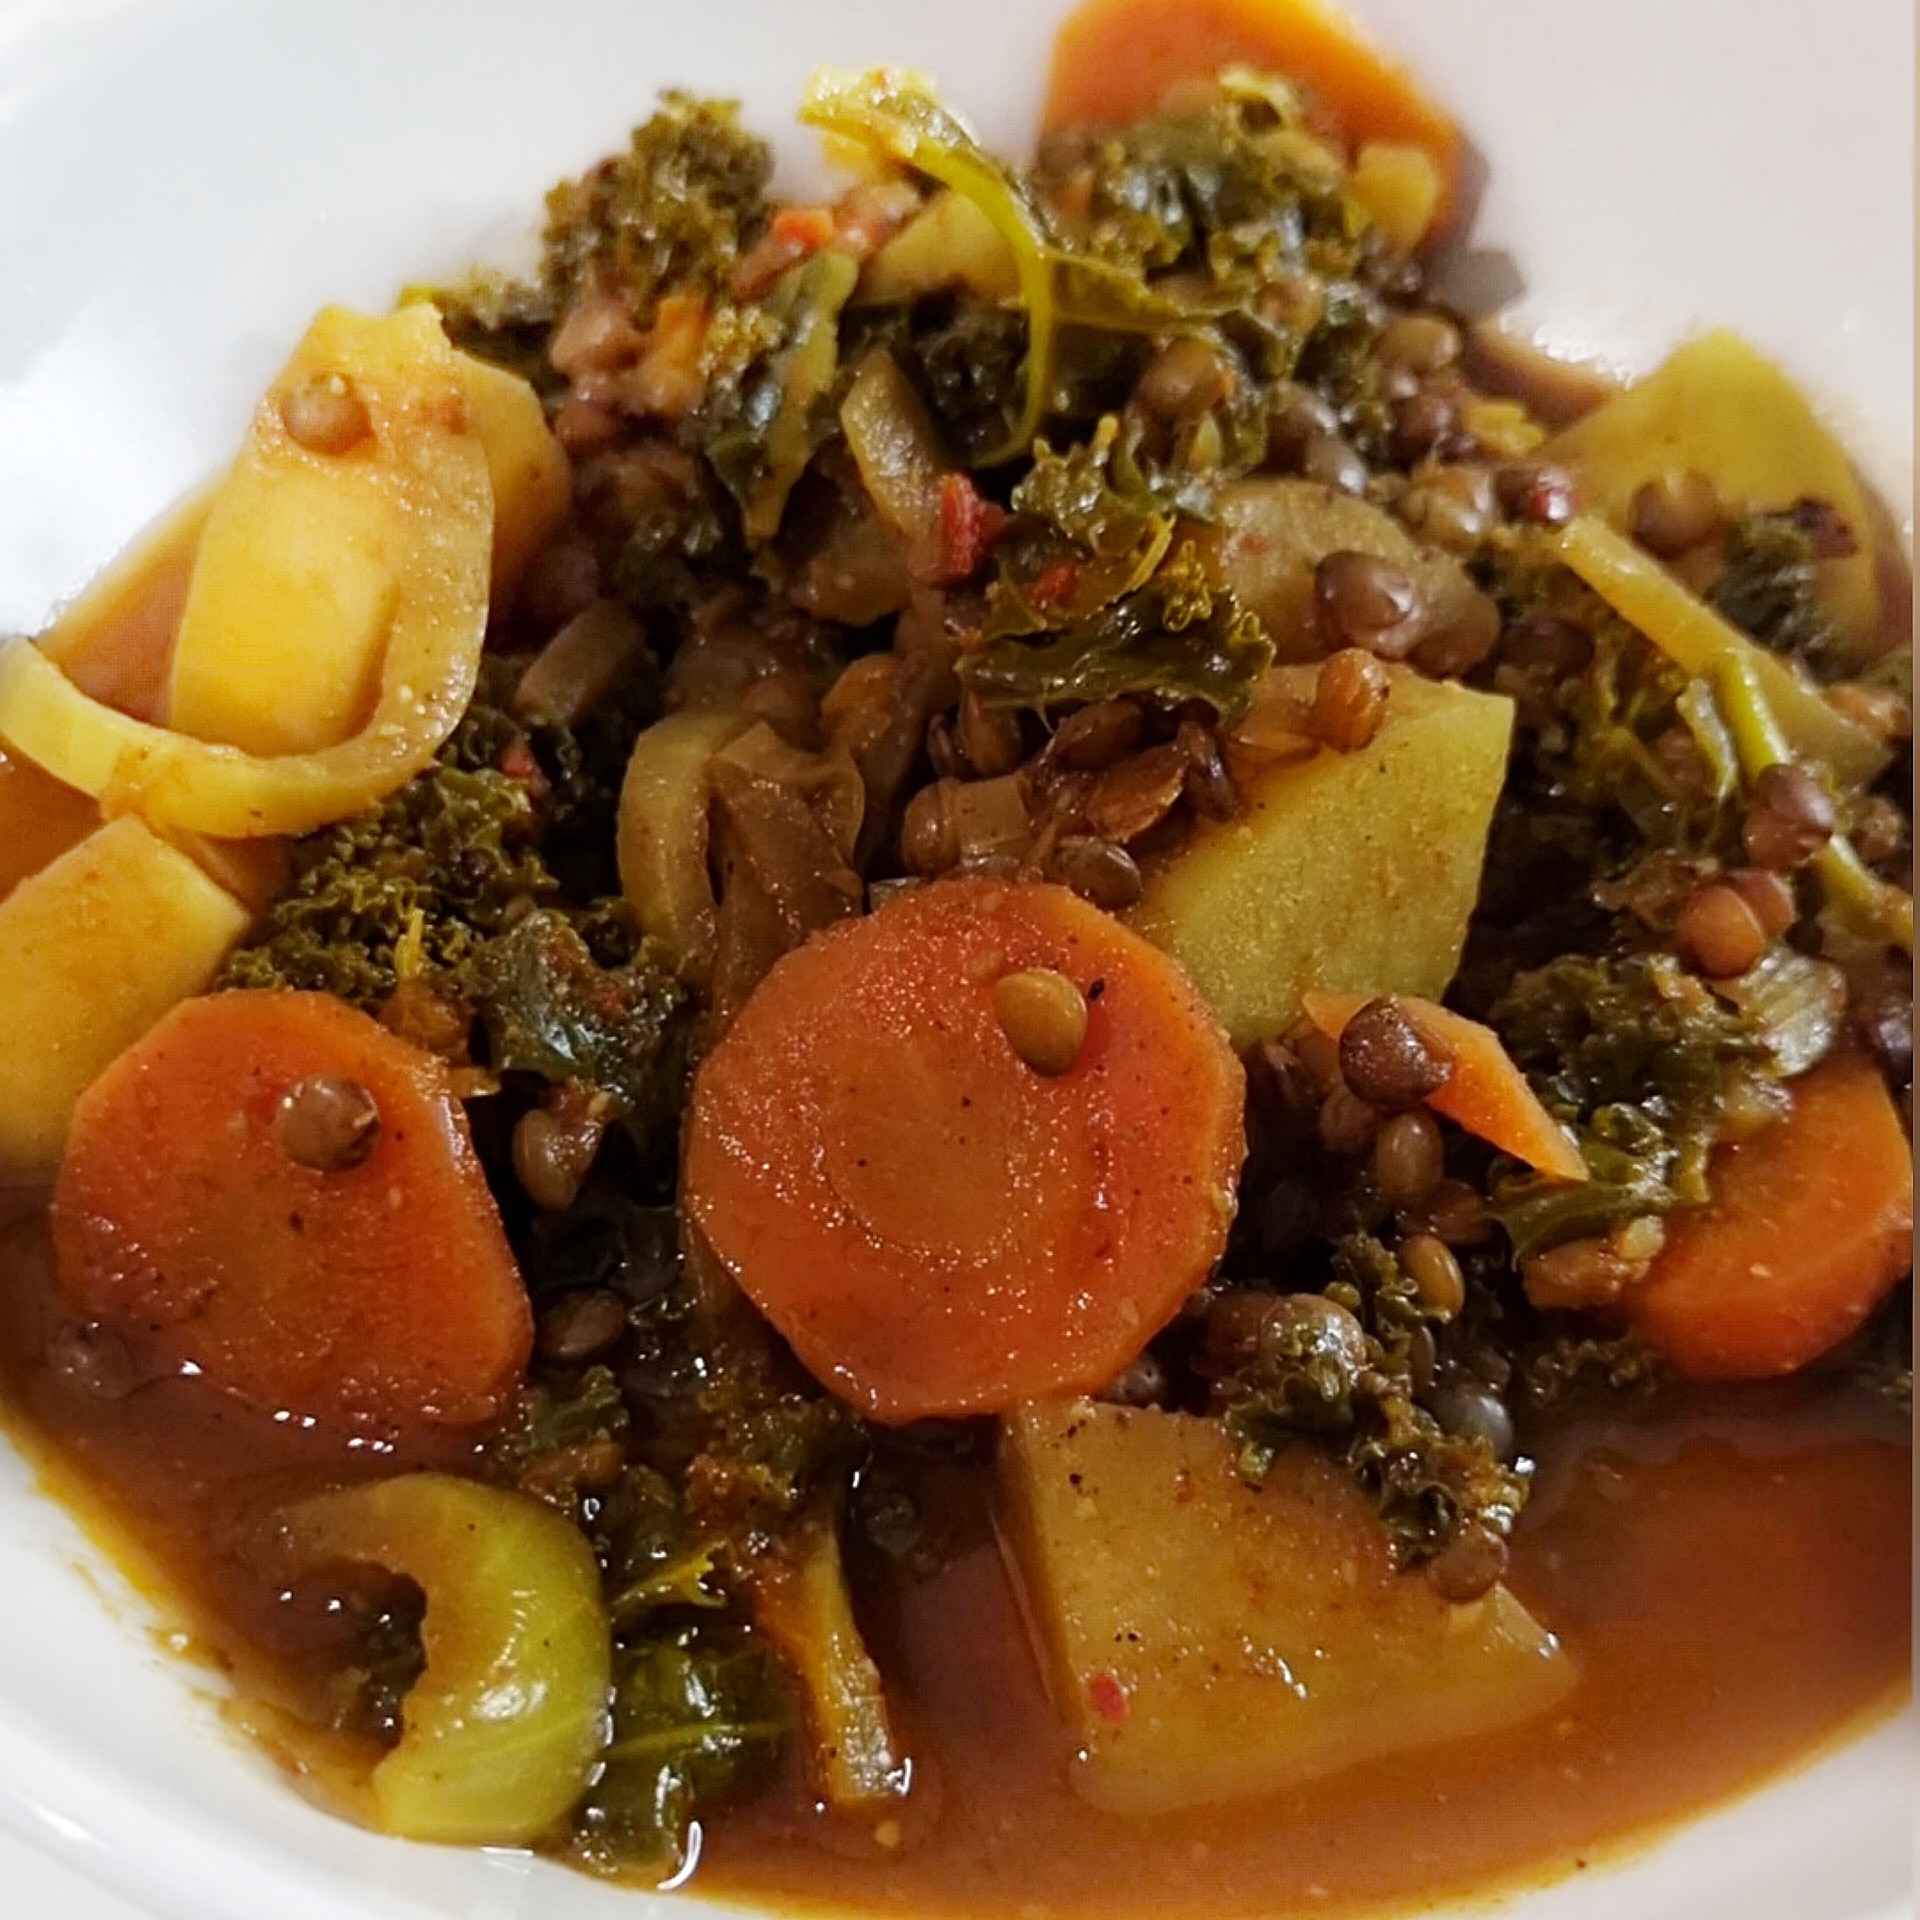 Lentilles vertes à la marocaine et chou kale (végétarien)